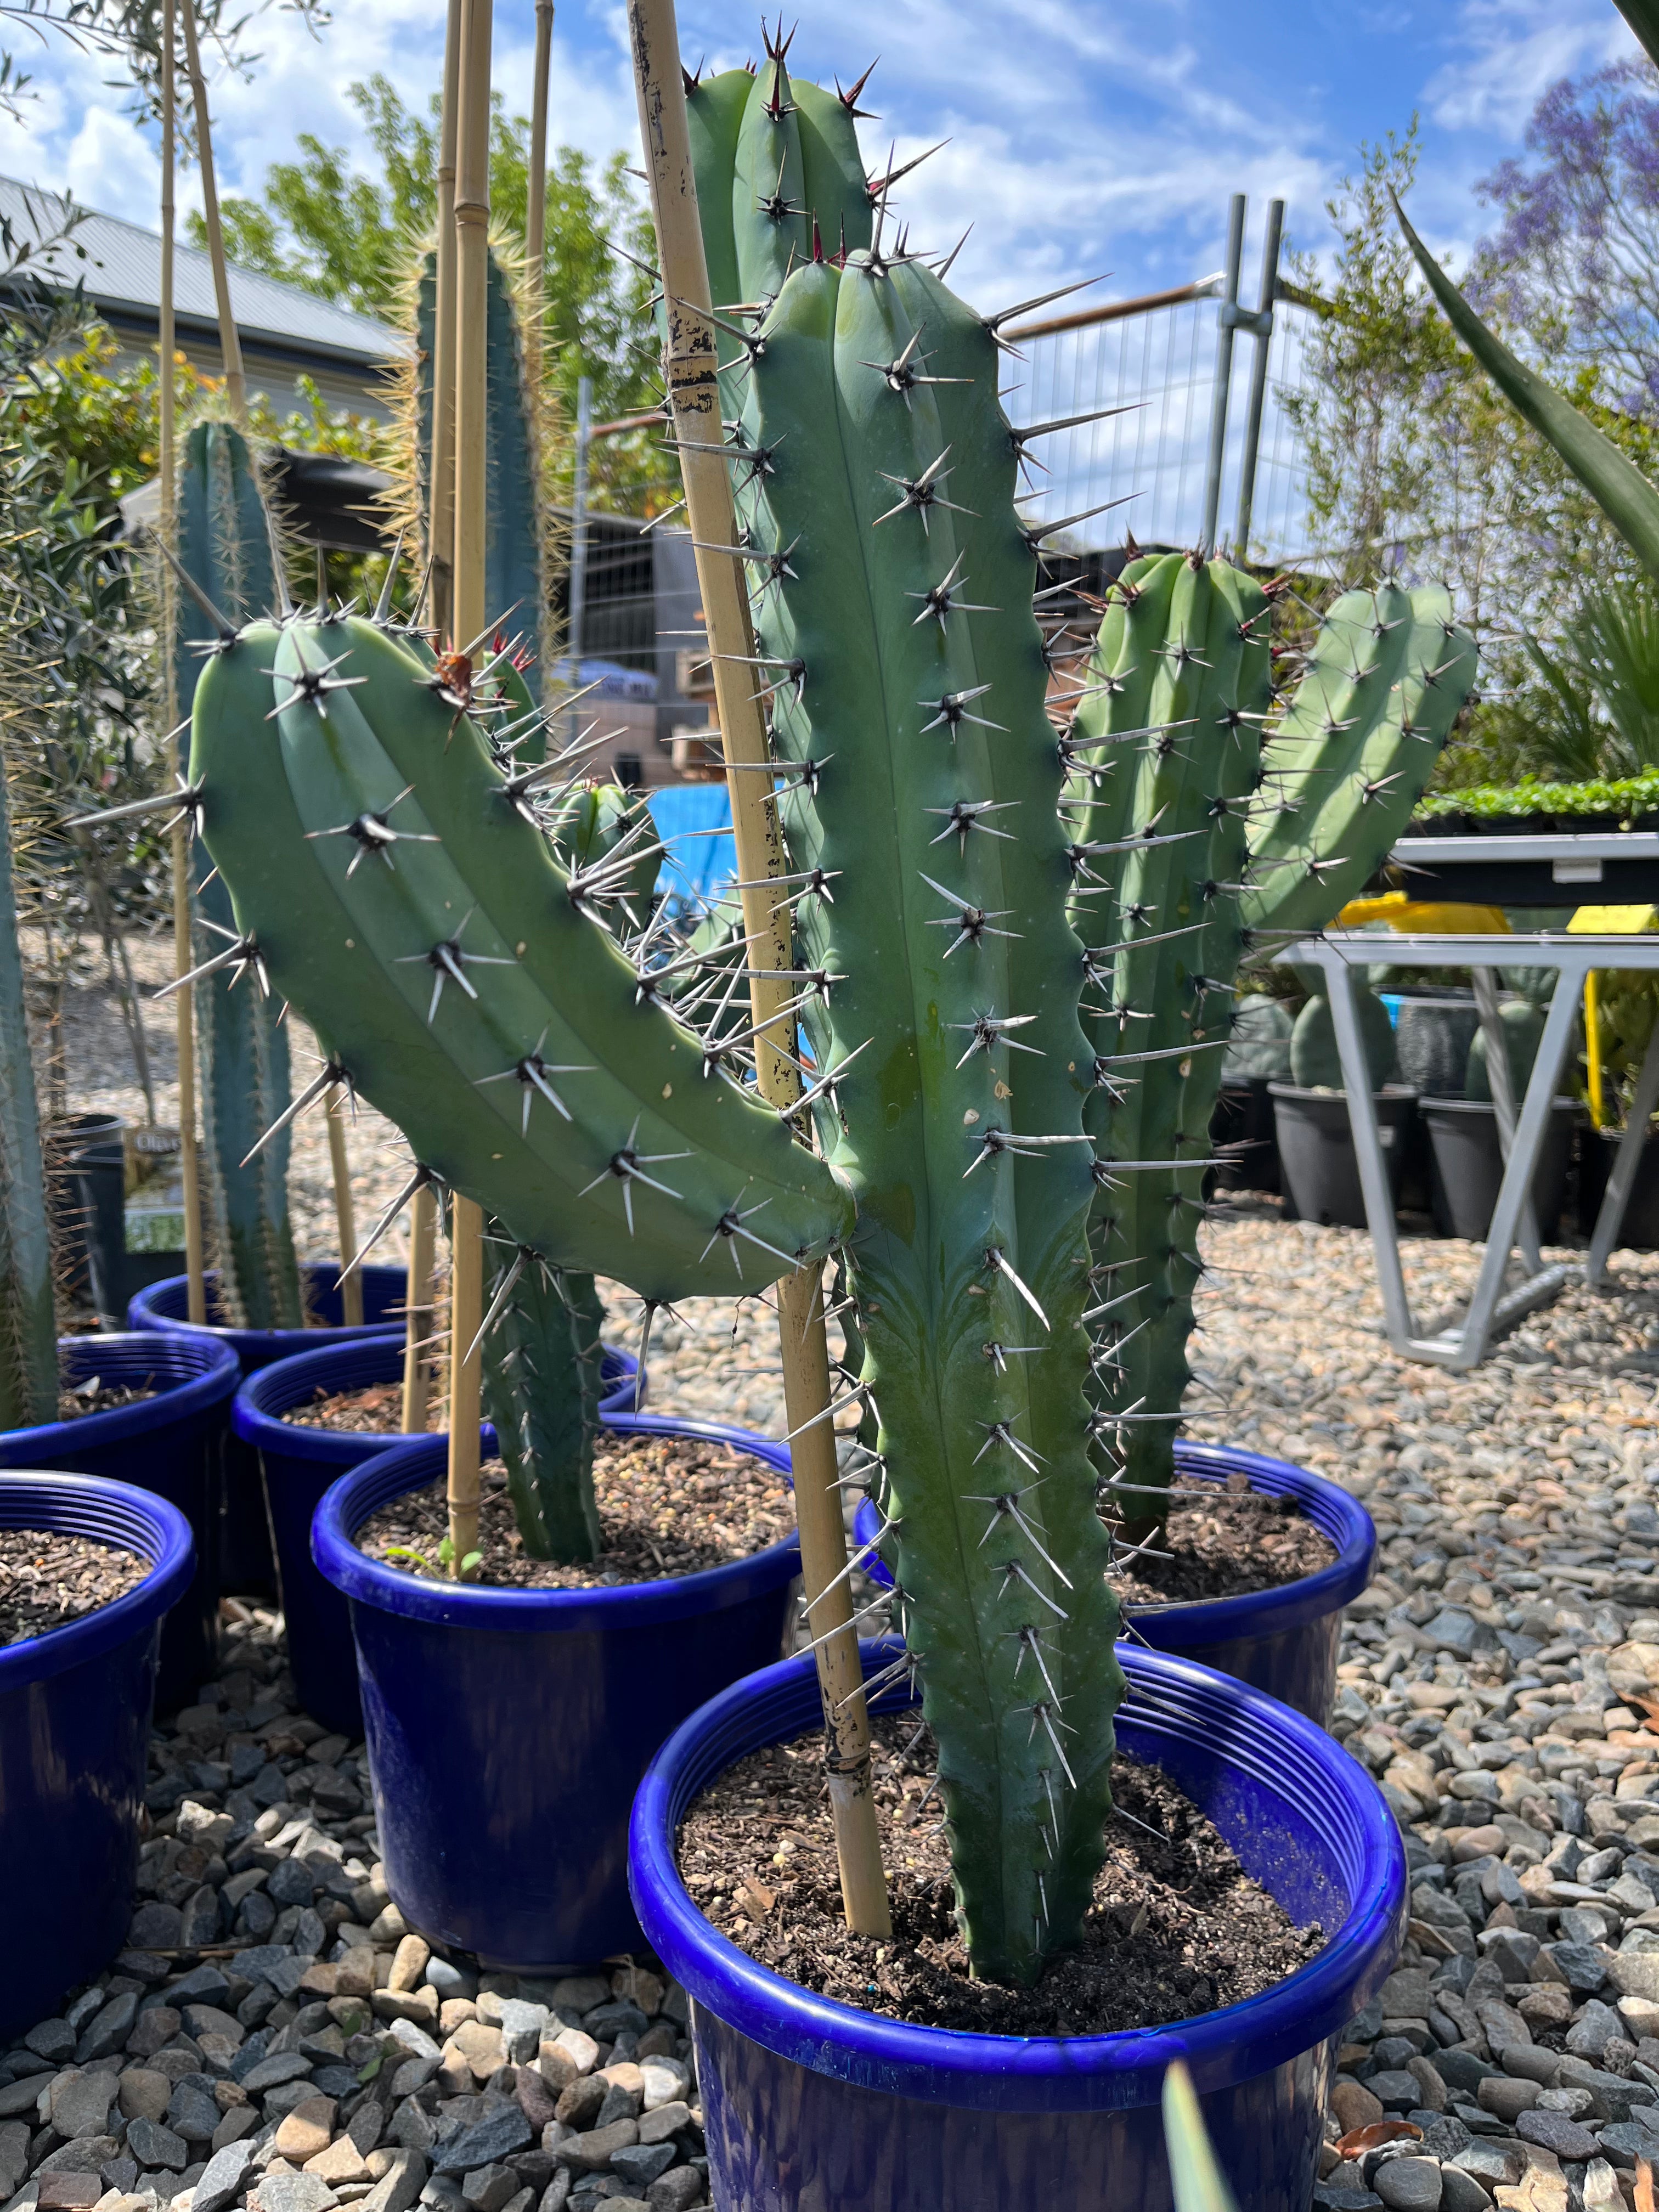 Myrillocactus cochal - Candelabra Cactus